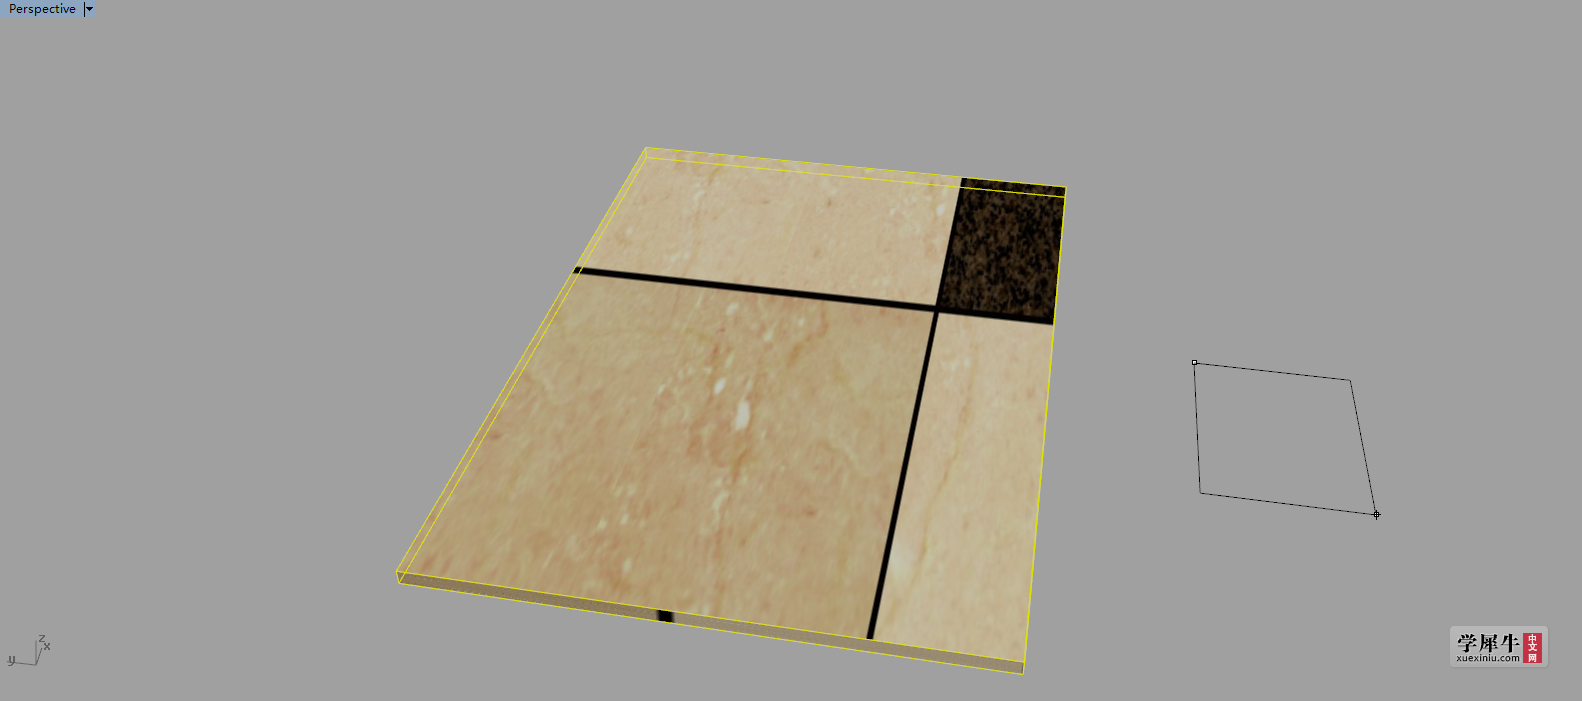 拉出一个地砖实际大小的长方体，这个因地面参照物而定